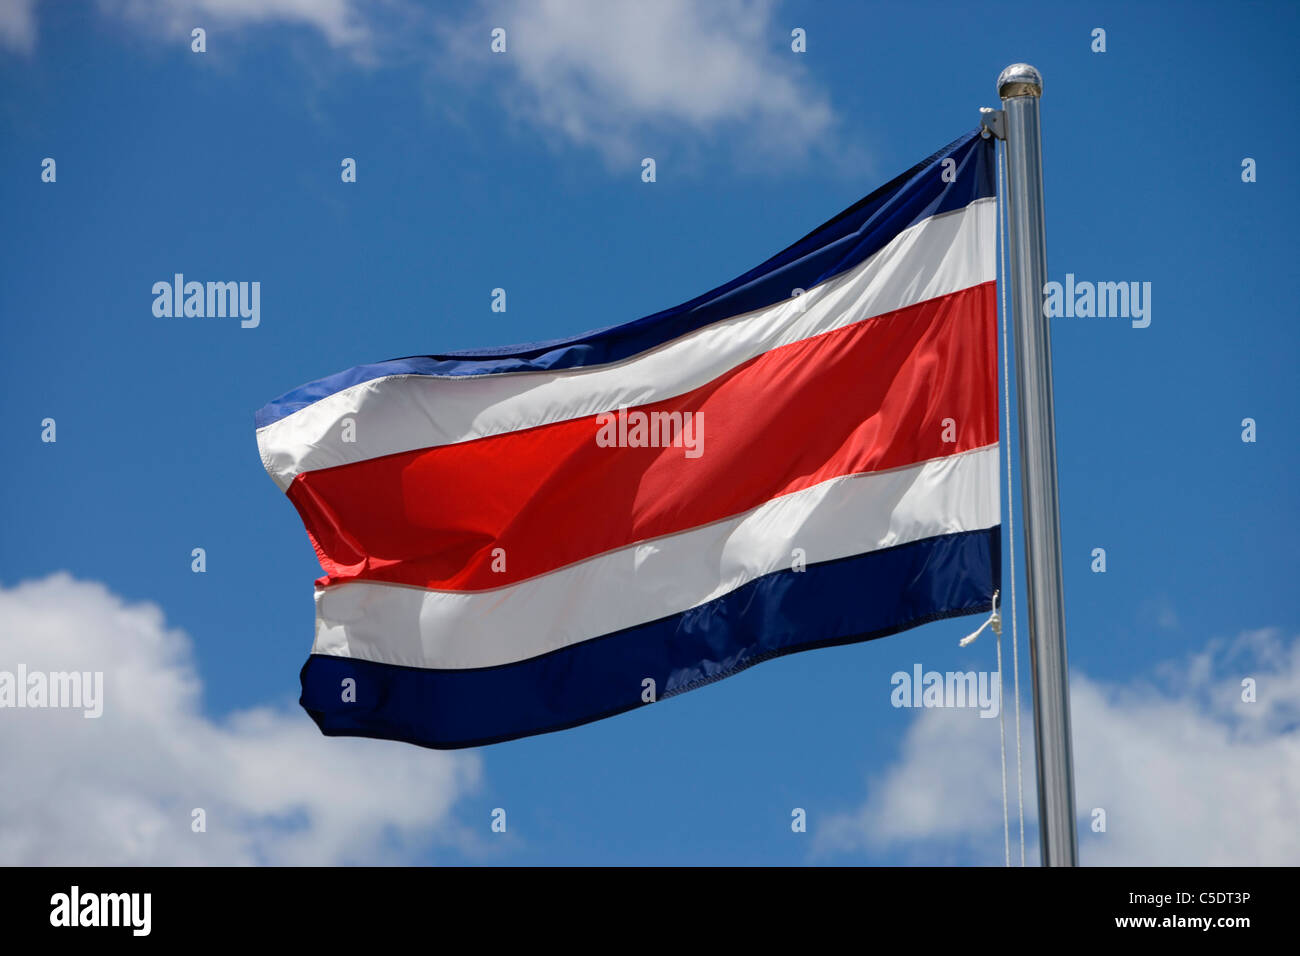 Ángulo de visión baja de Costa Rican bandera ondeando contra el cielo azul y las nubes Foto de stock